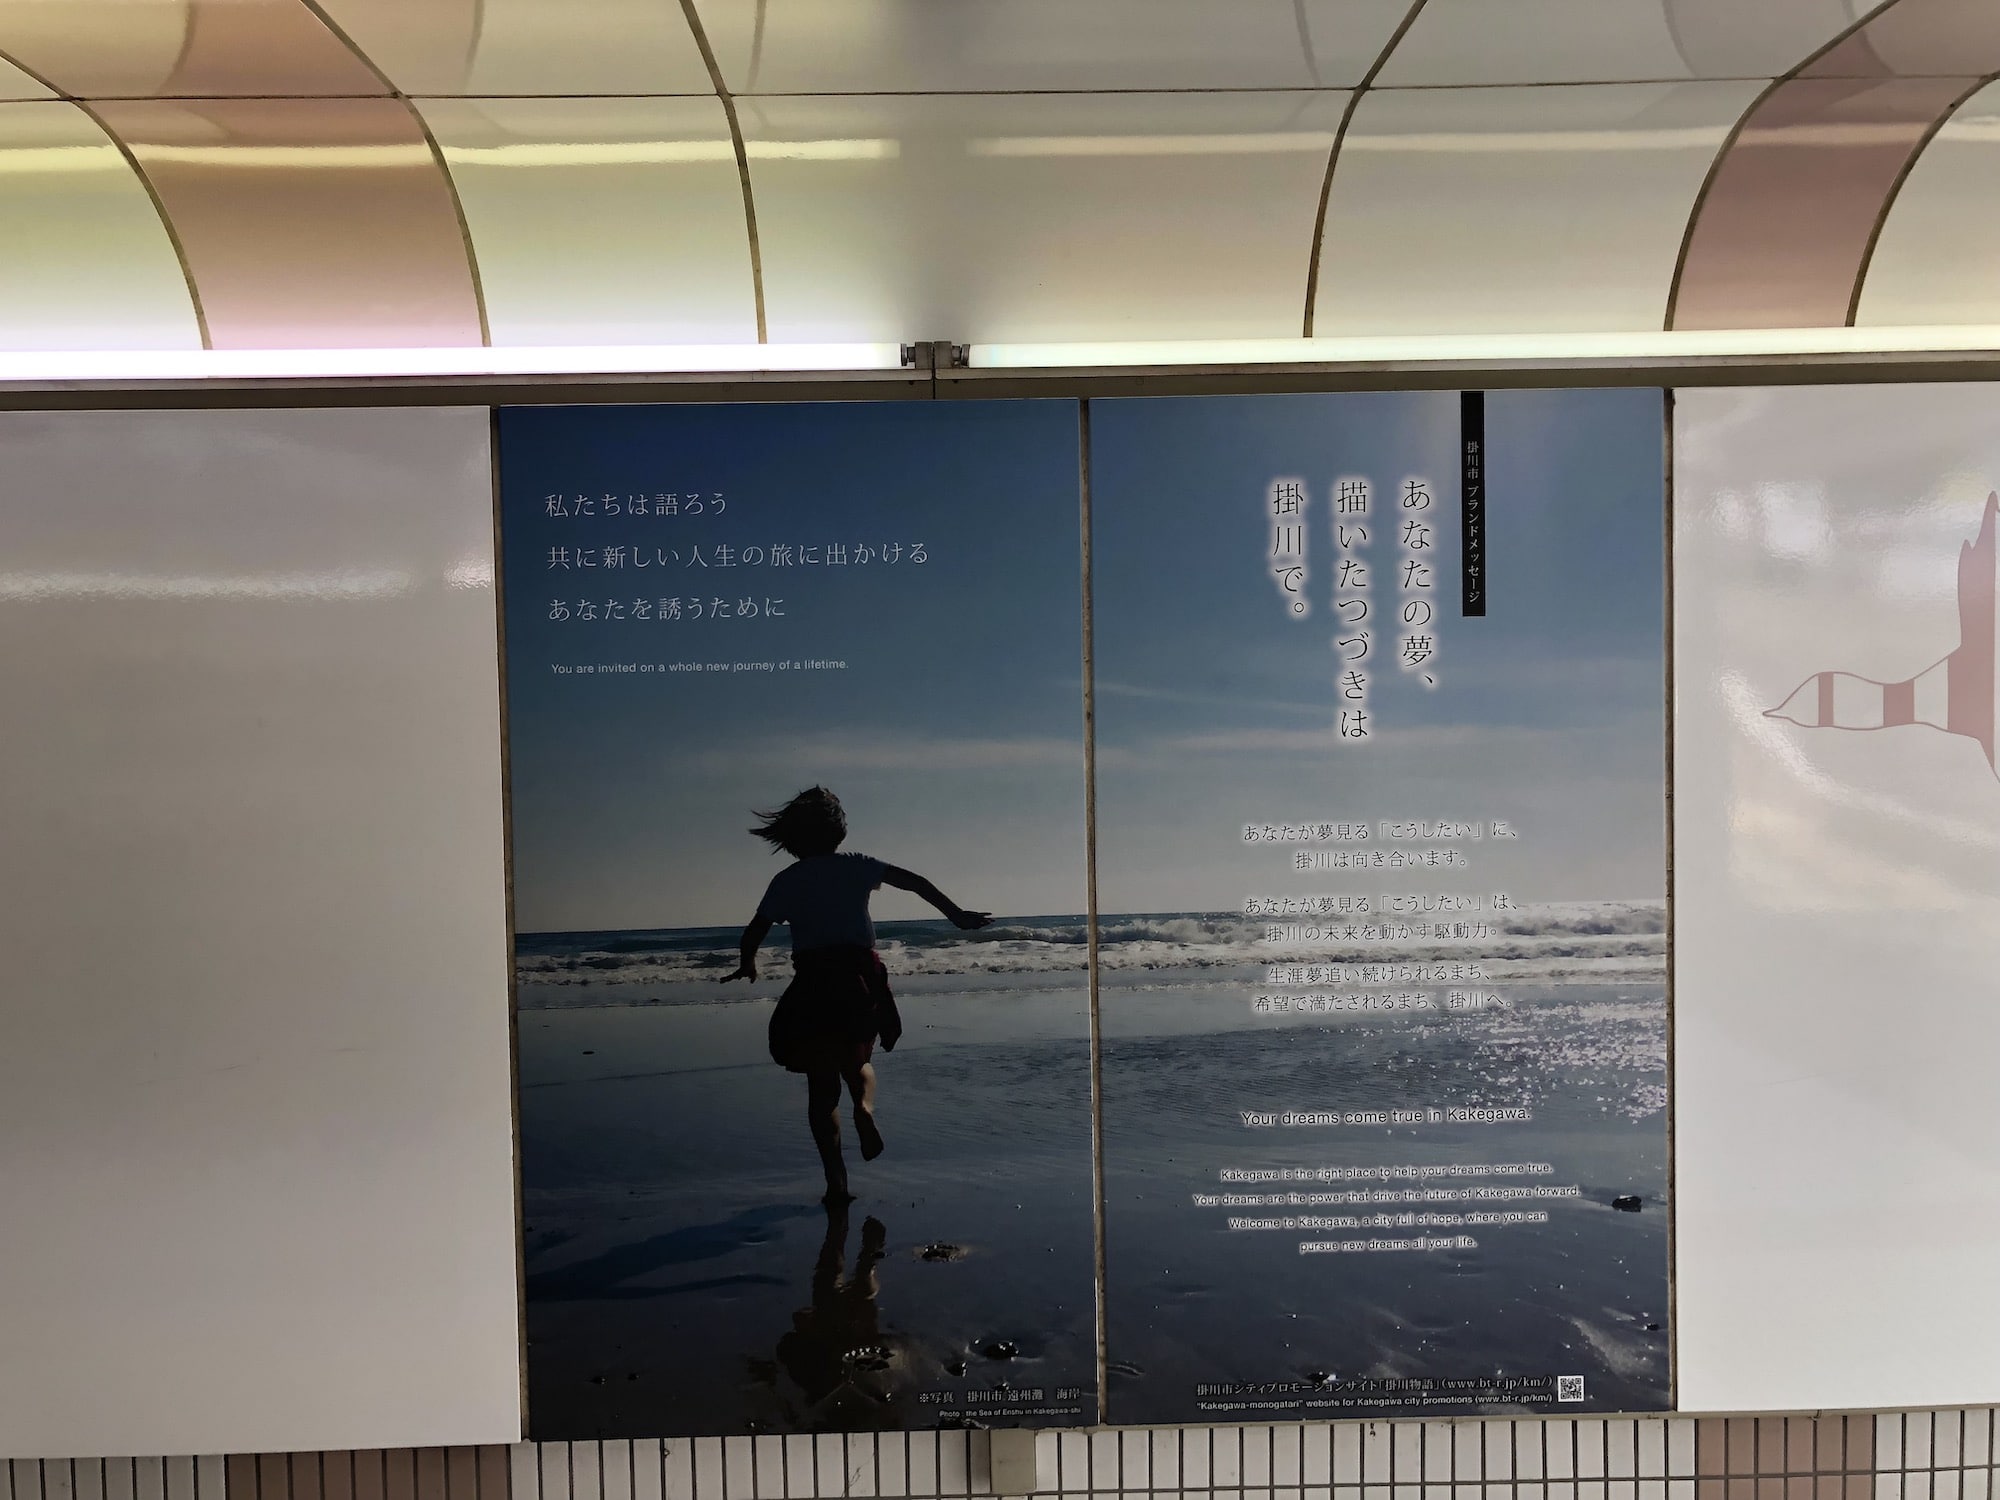 もう見た？掛川のブランドメッセージがJR掛川駅の北口通路に張り出されていたよ